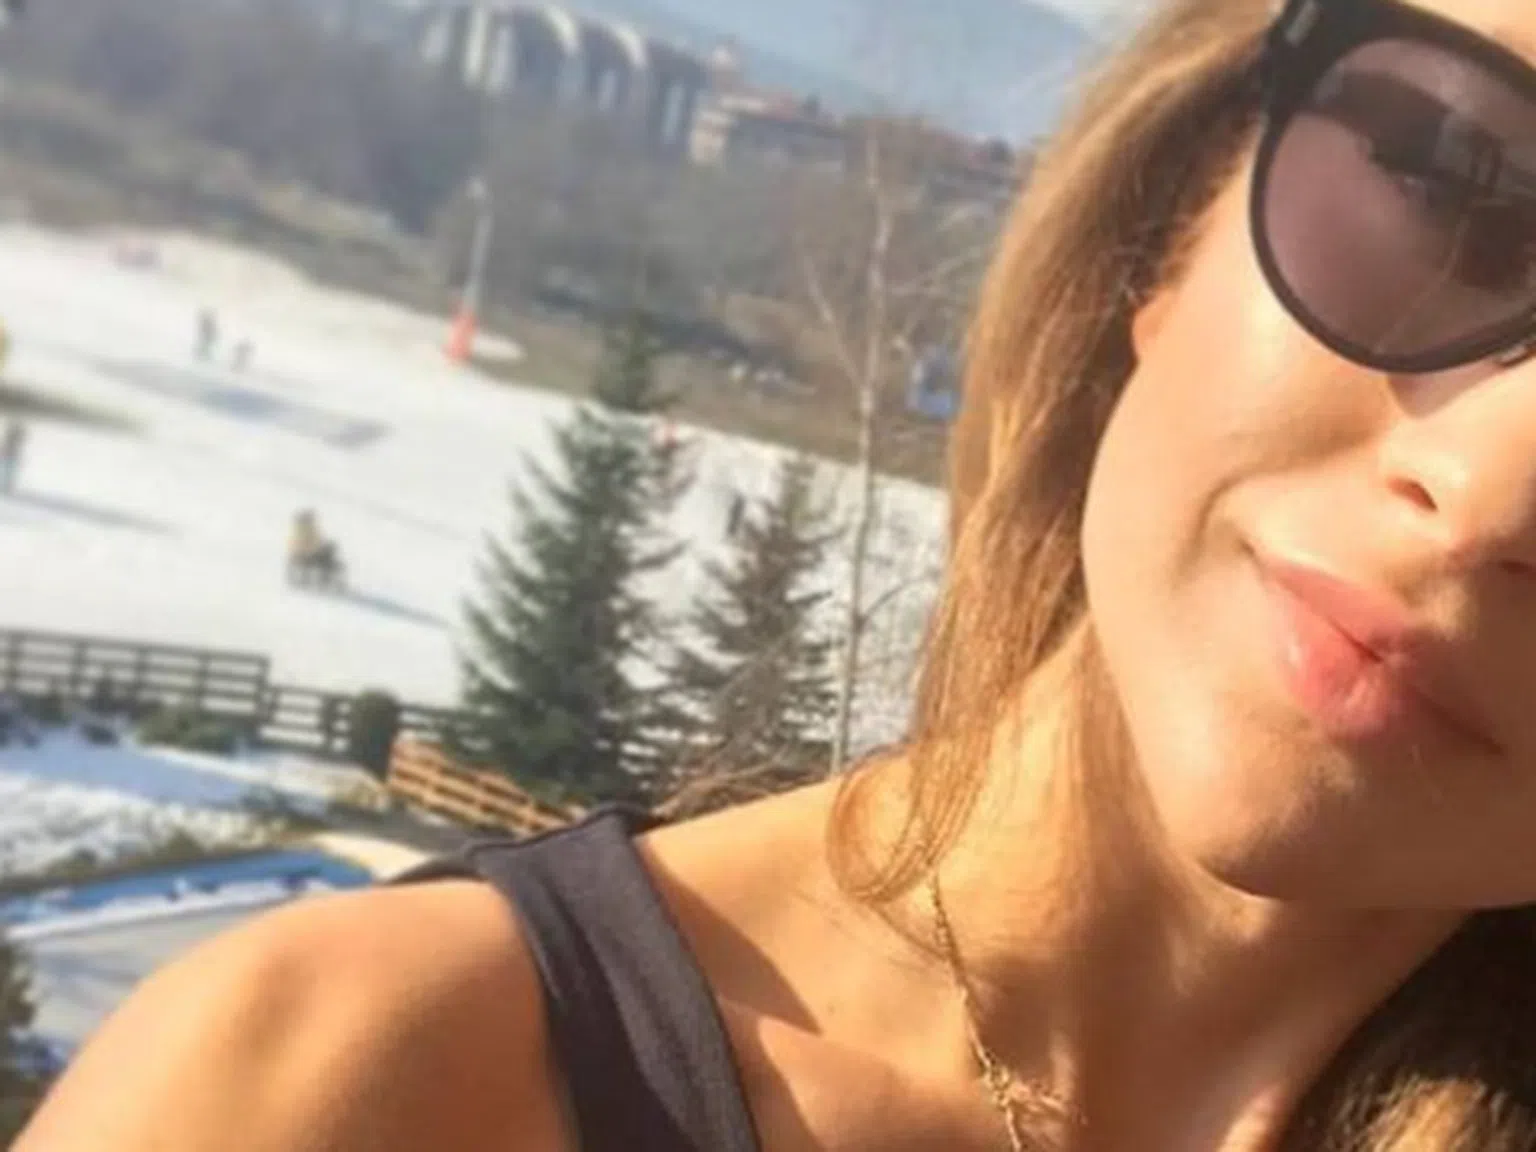 Никол Станкулова: Преди карах ски, сега очаквам да деградирам до найлон